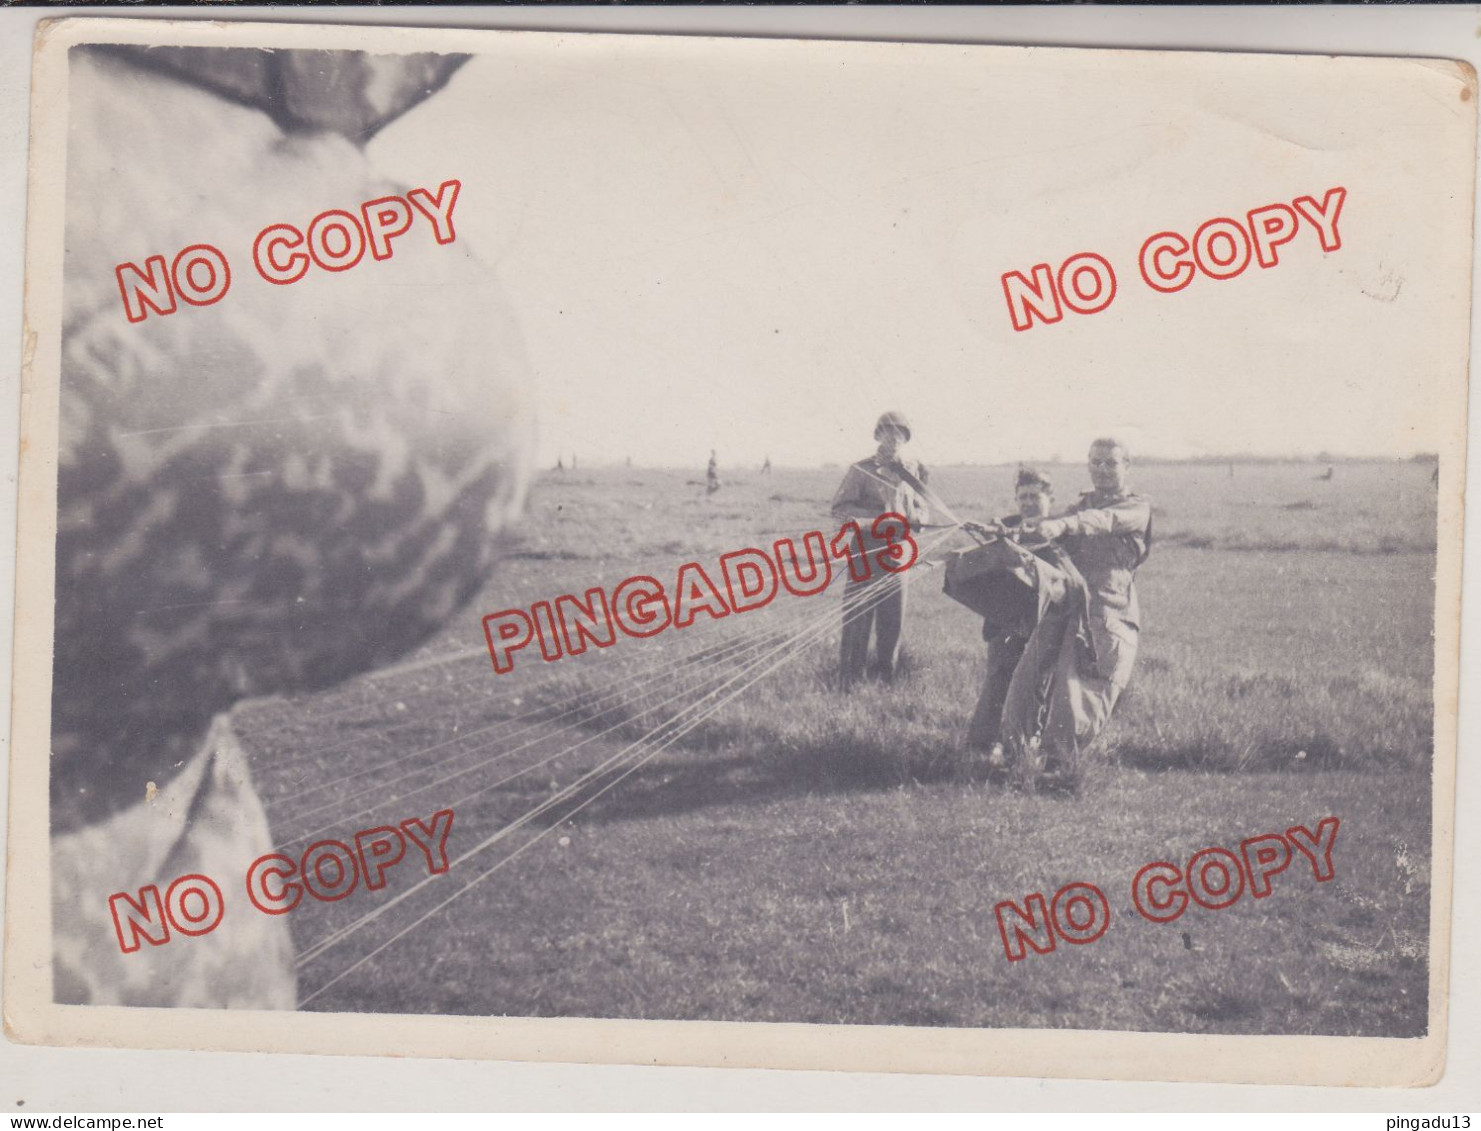 Fixe Photo Armée France Parachutiste Parachutisme Années 50 Beau Format - Guerre, Militaire